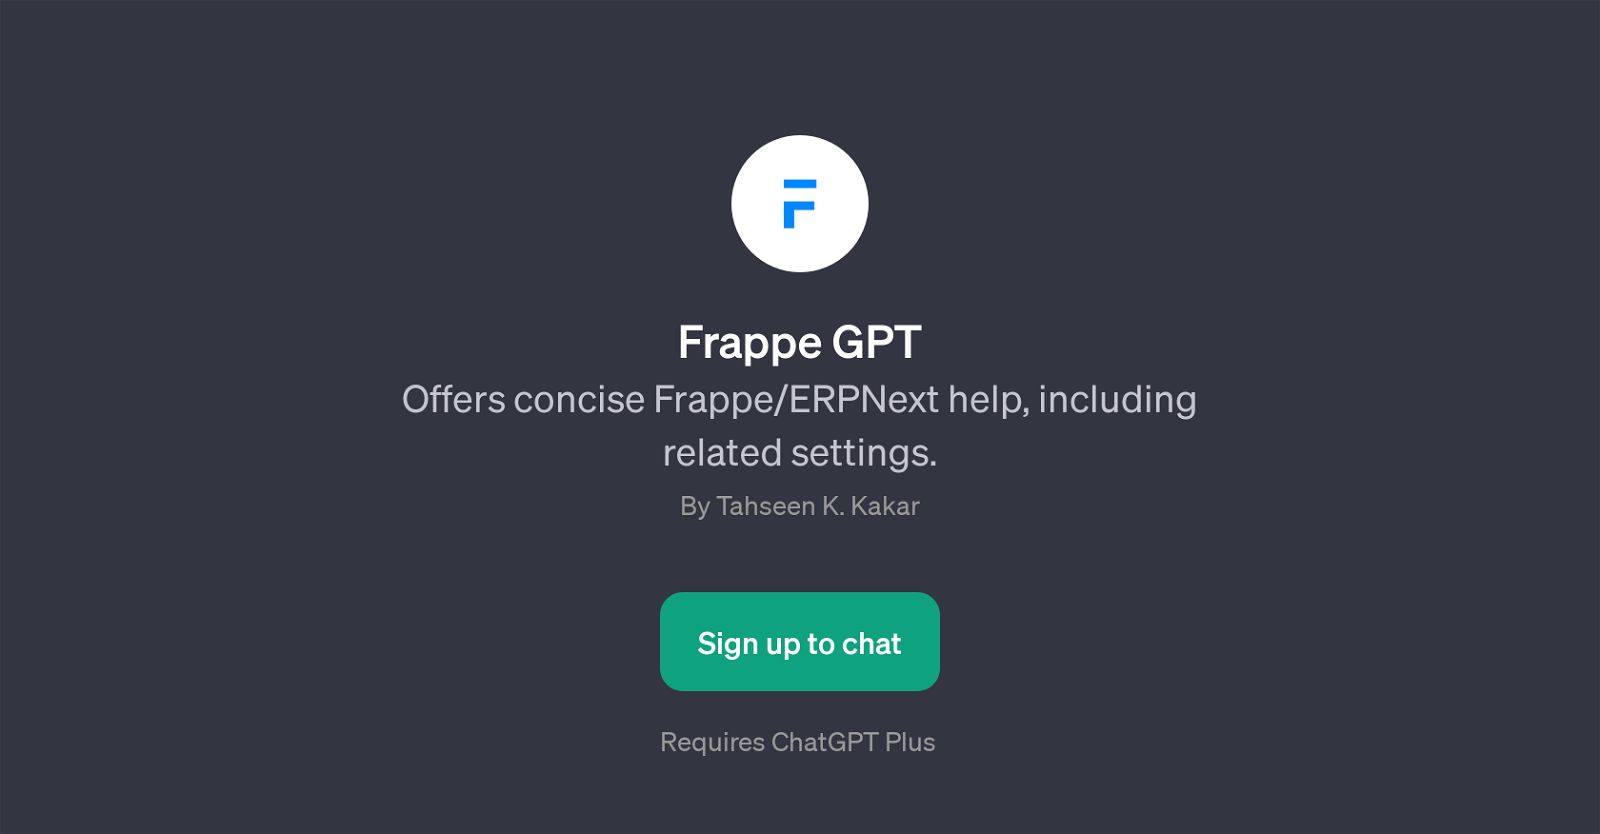 Frappe GPT website